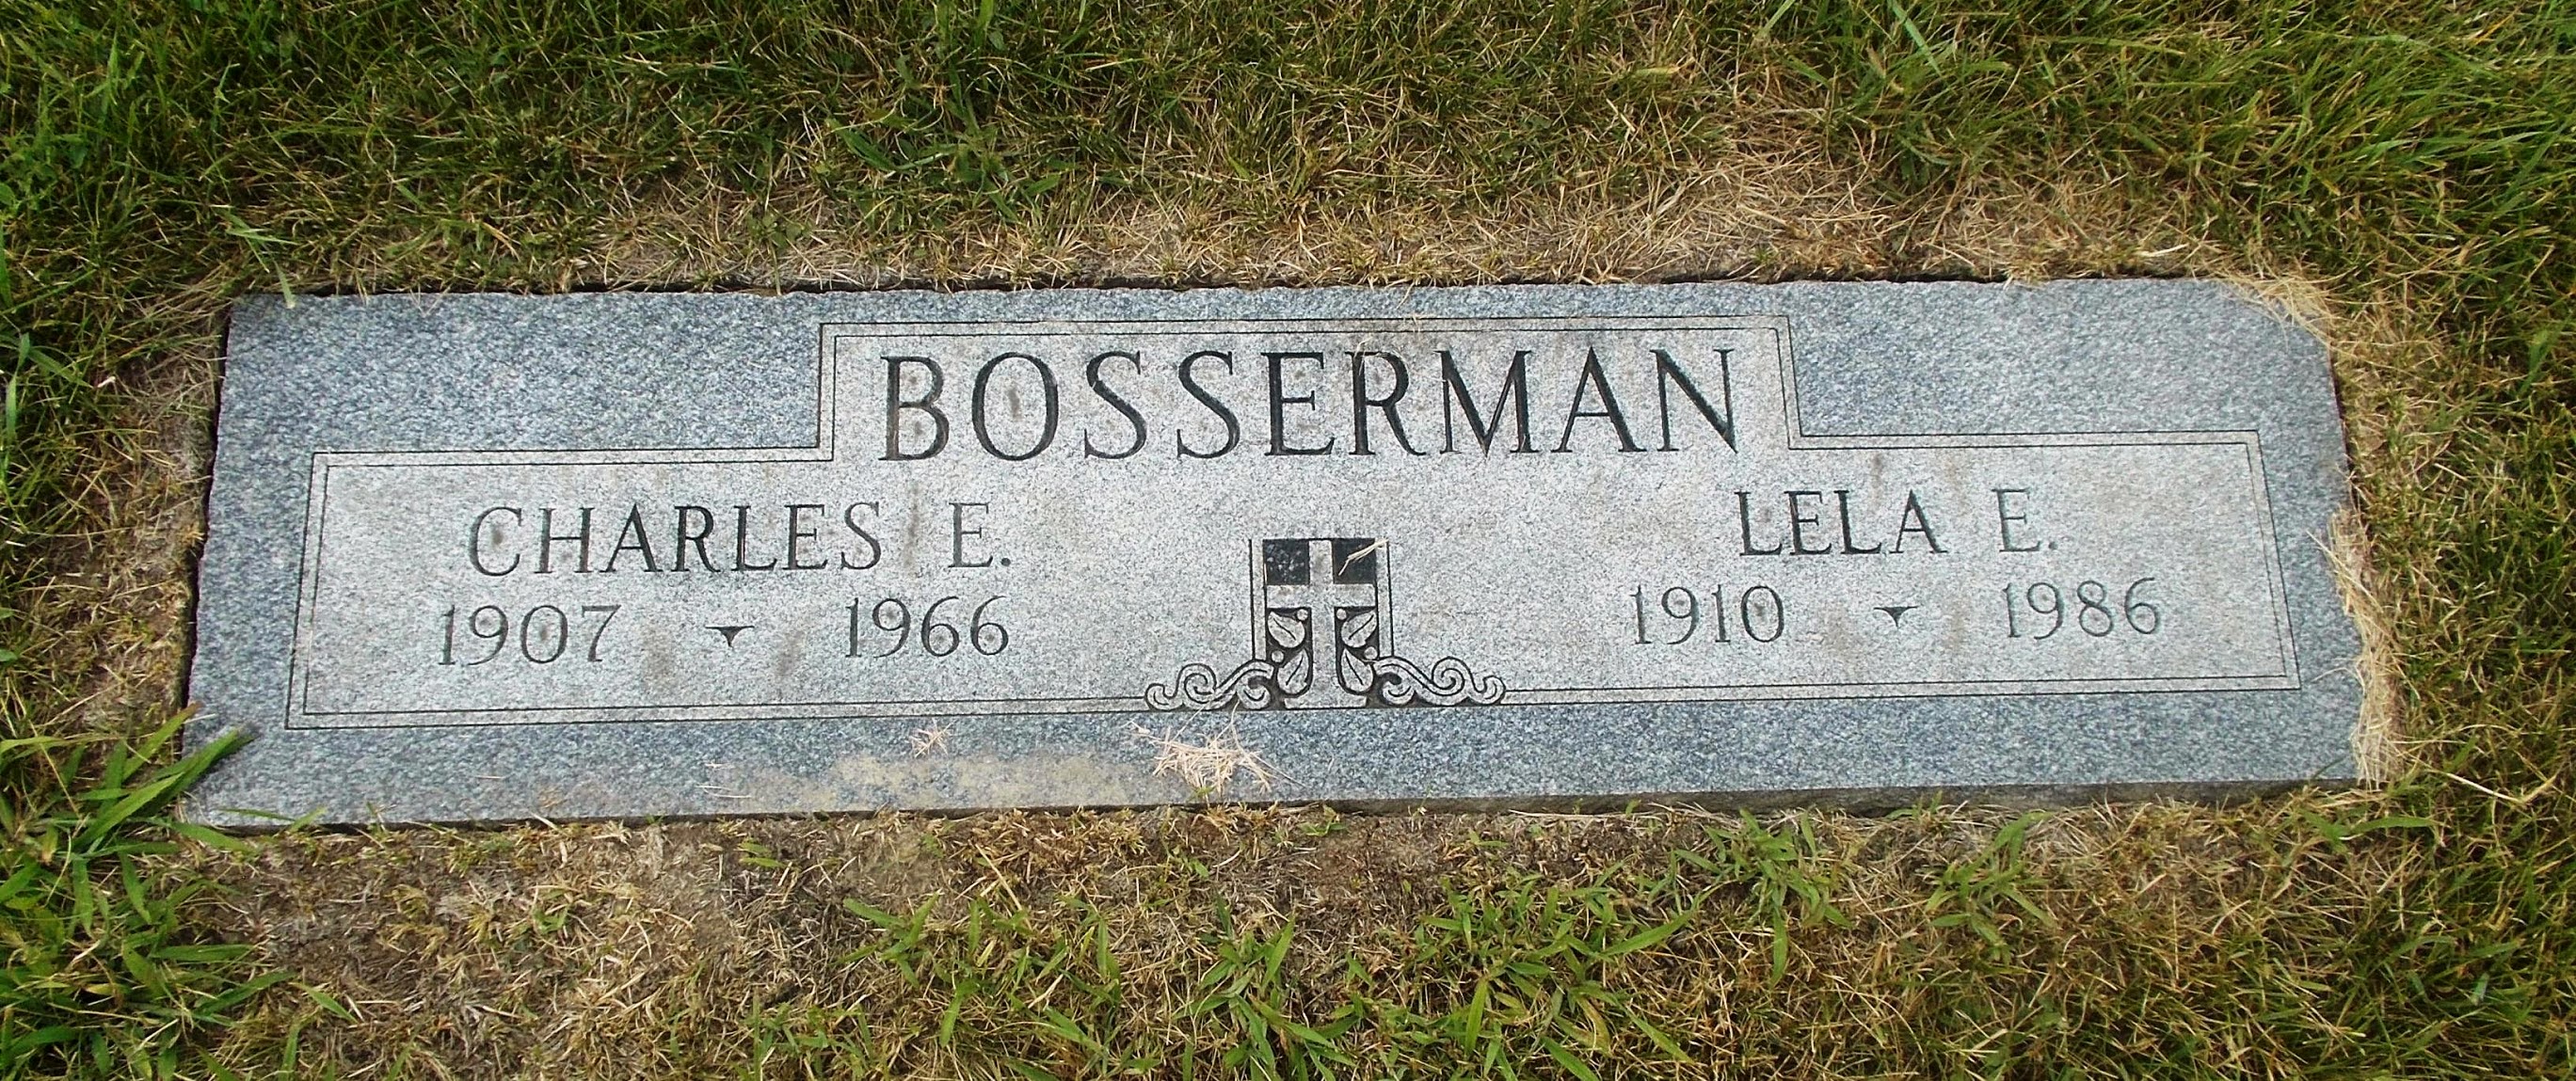 Lela E Bosserman